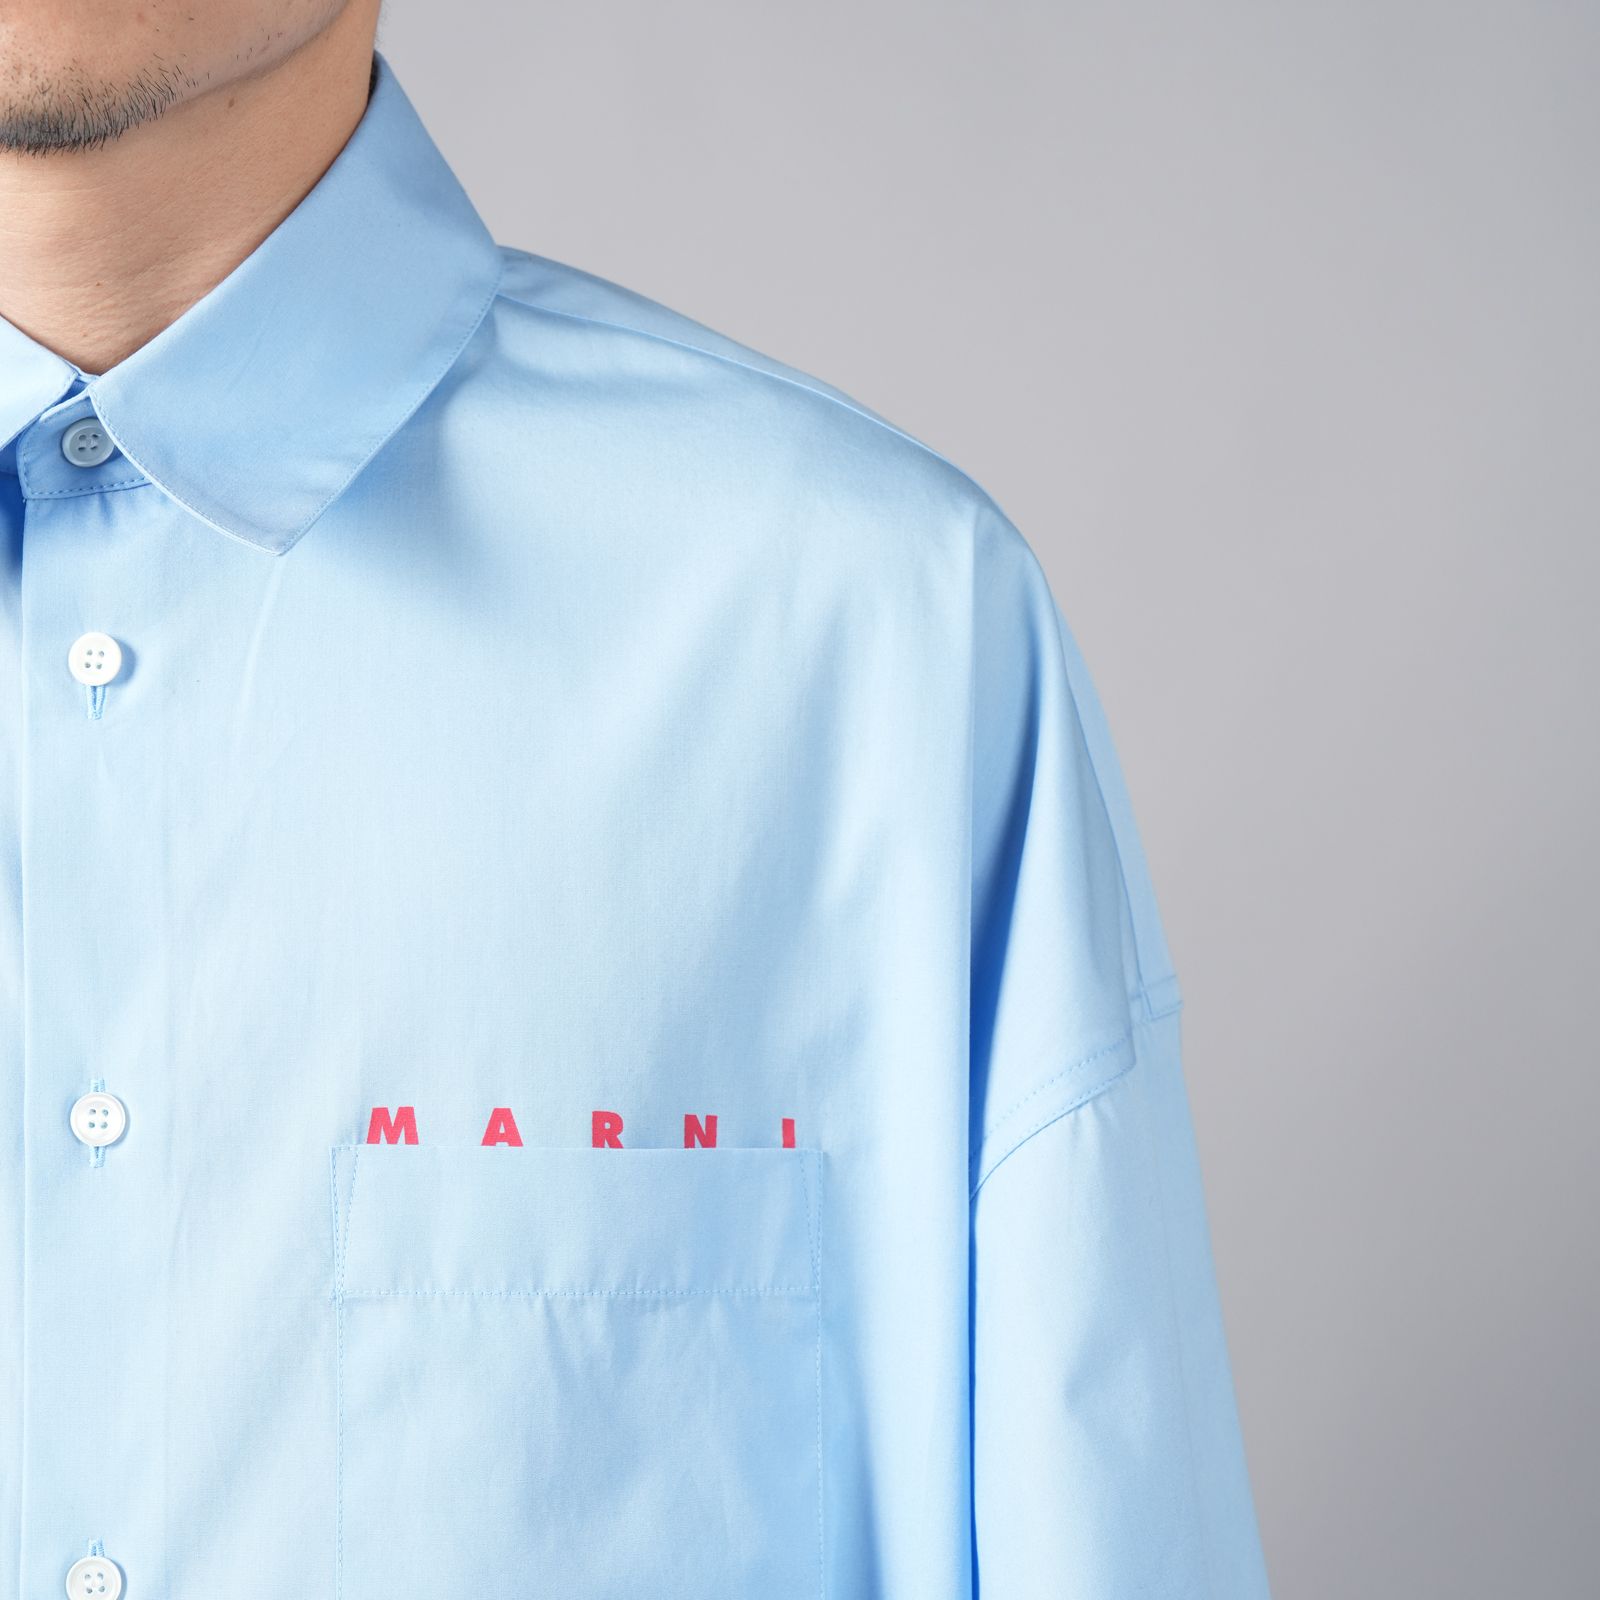 MARNI - L/S SHIRTS / ロングスリーブシャツ / 長袖シャツ (ブルー